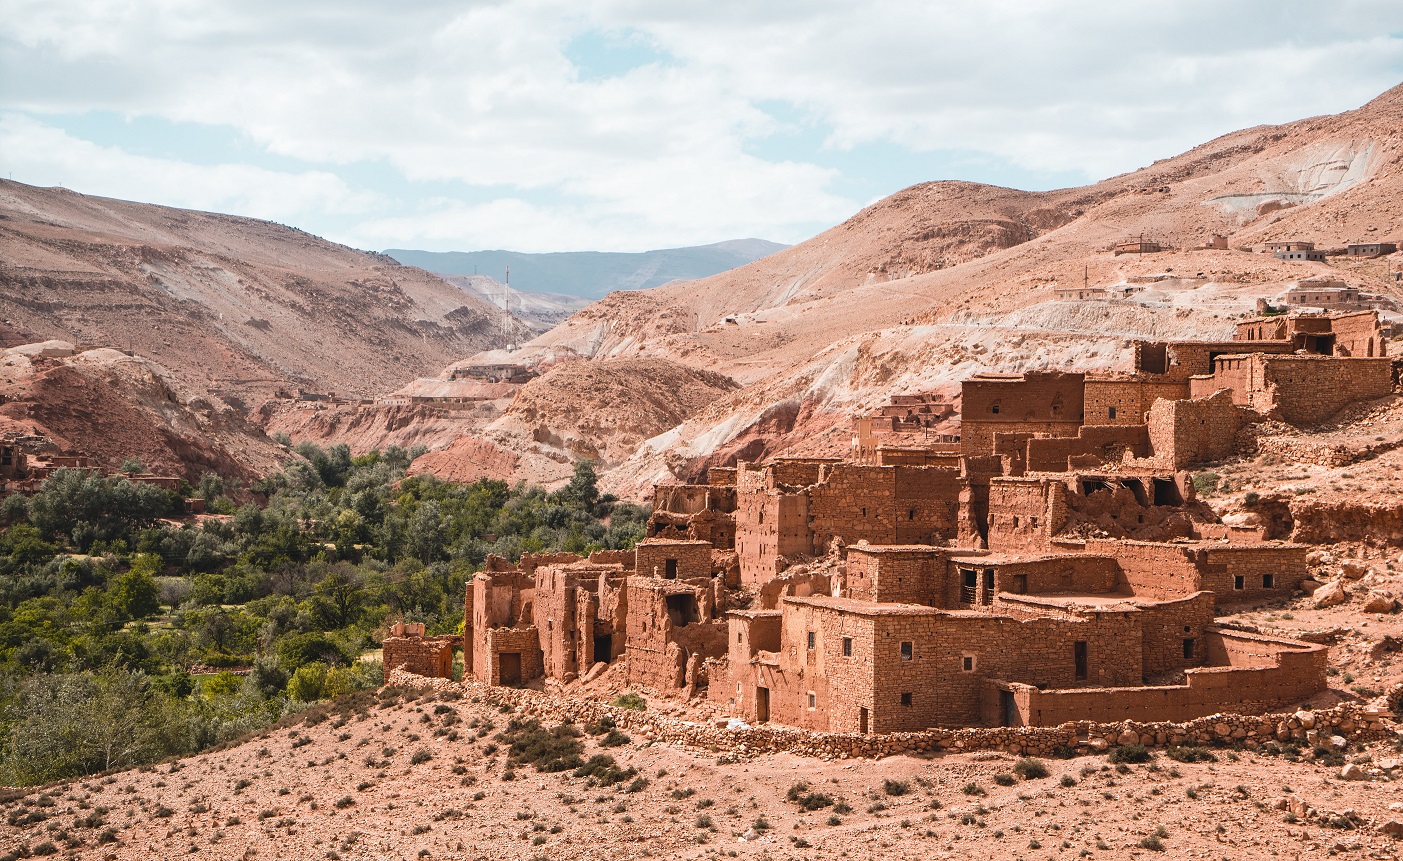 Day 07: Ouarzazate - Marrakech (4x4)